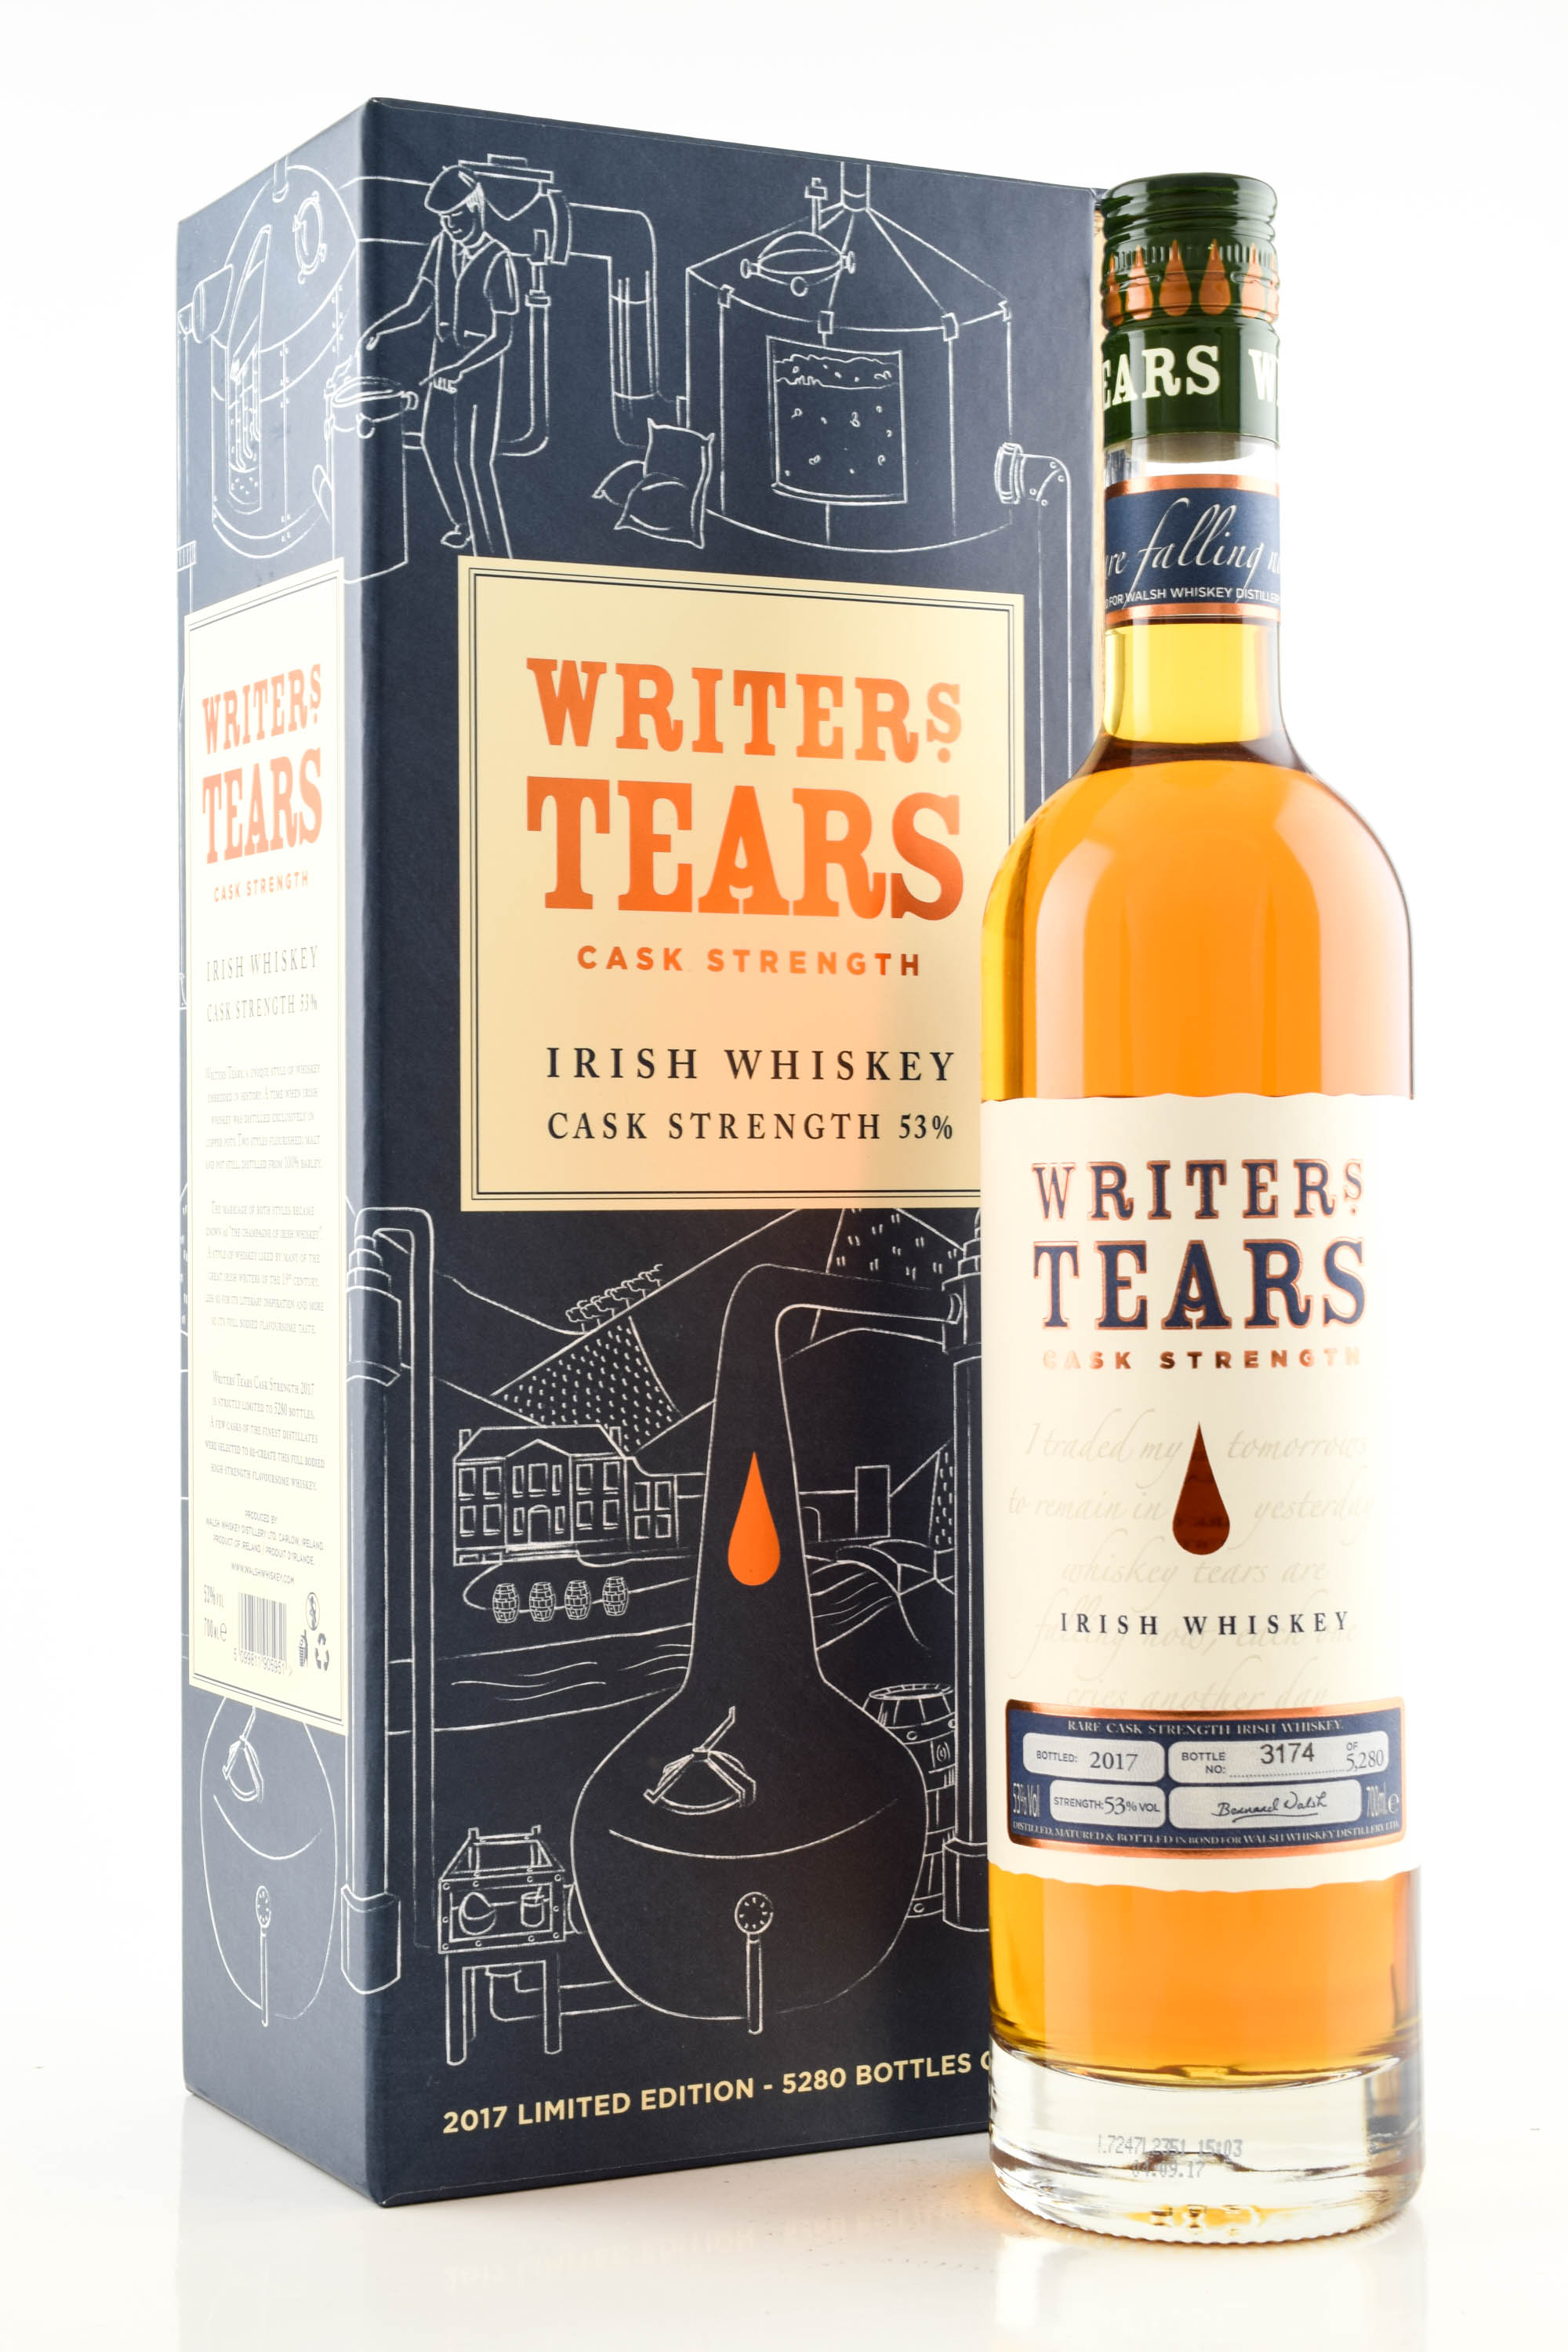 Writers tears 0.7. Writers tears Cask strength 2019 53 Vol. 0.7l. Виски Вритерс Теарс. Black tears виски. Райтерз ТИРЗ Каск стренгс.